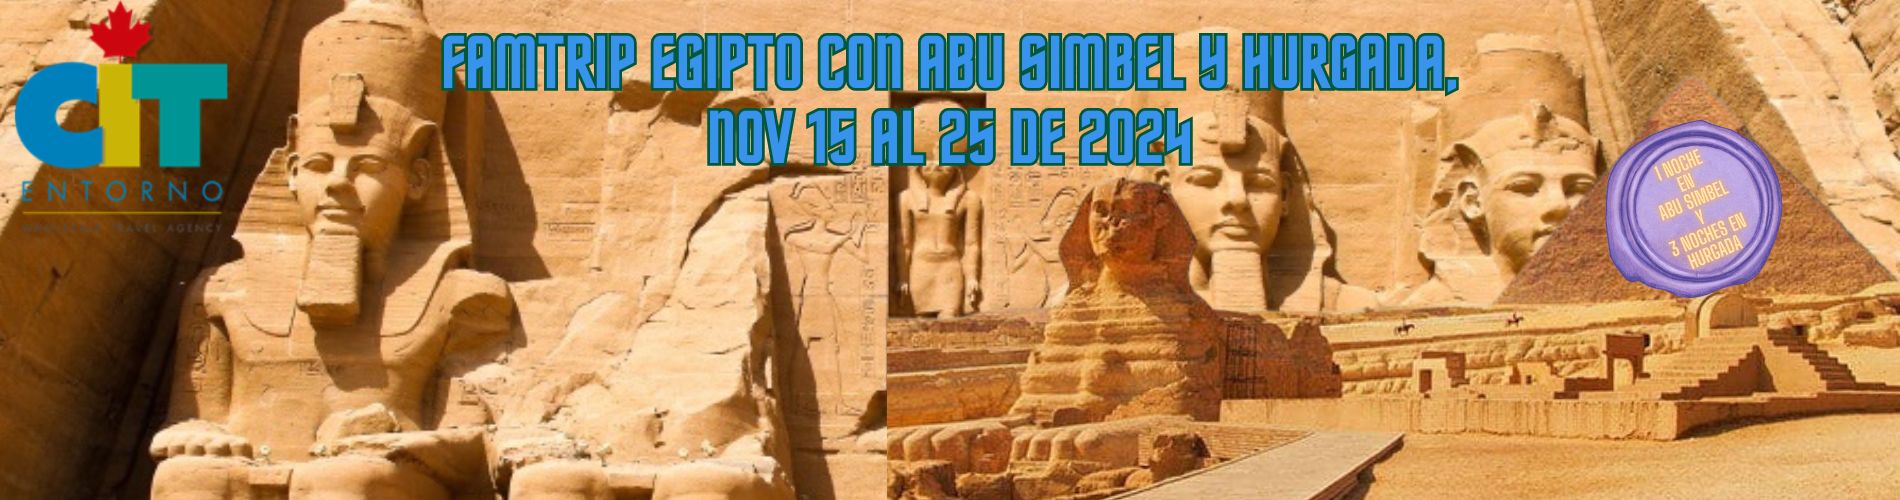 FAMTRIP Egipto con Abu Simbel y Hurgada 11 días 15 al 25 de noviembre de 2024